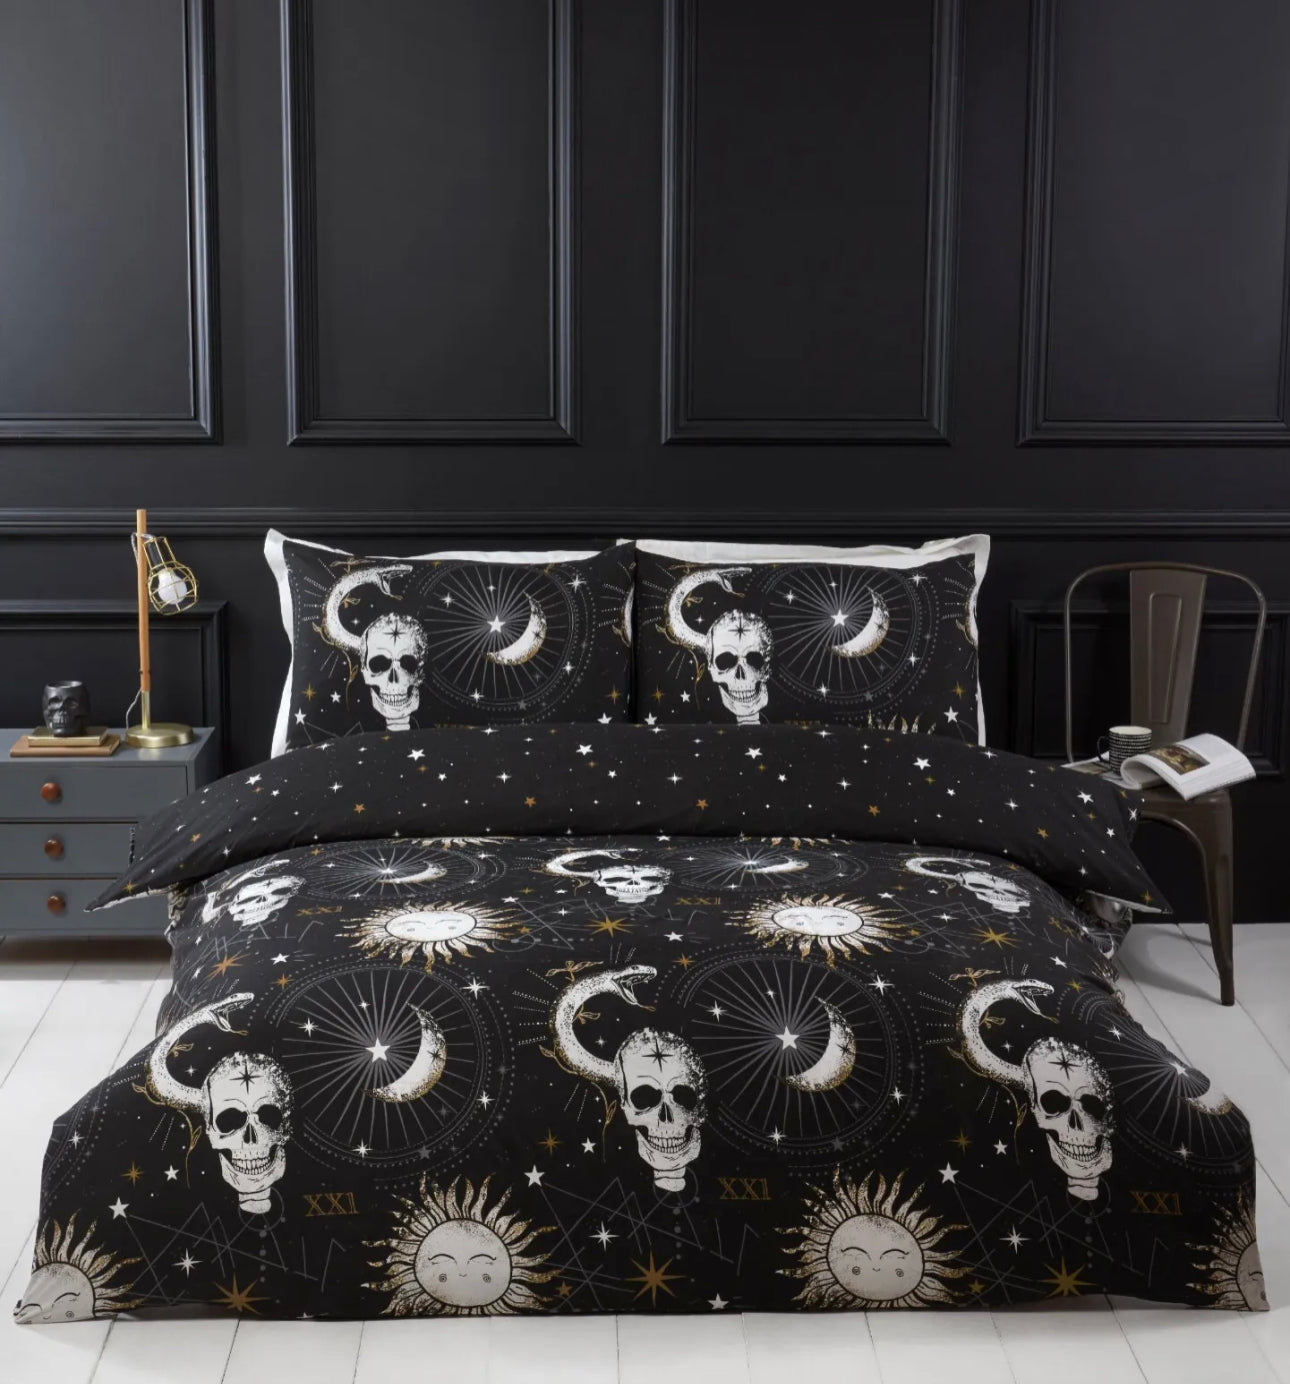 Tarot Skulls & Moons Bedding